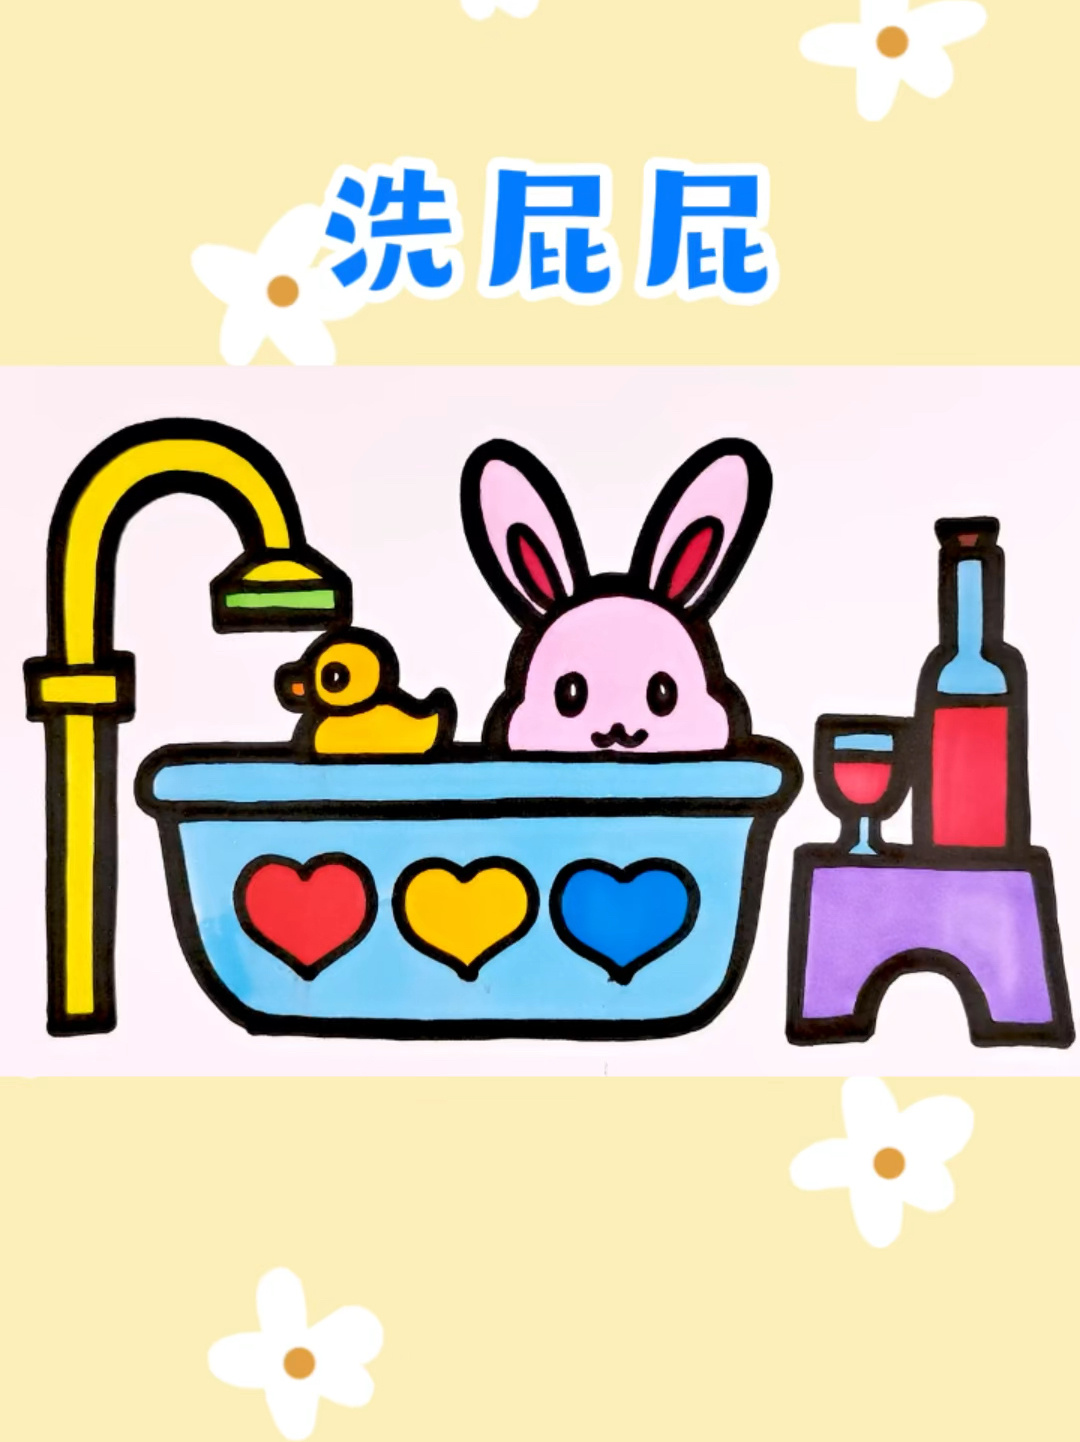 兔子洗澡简笔画图片